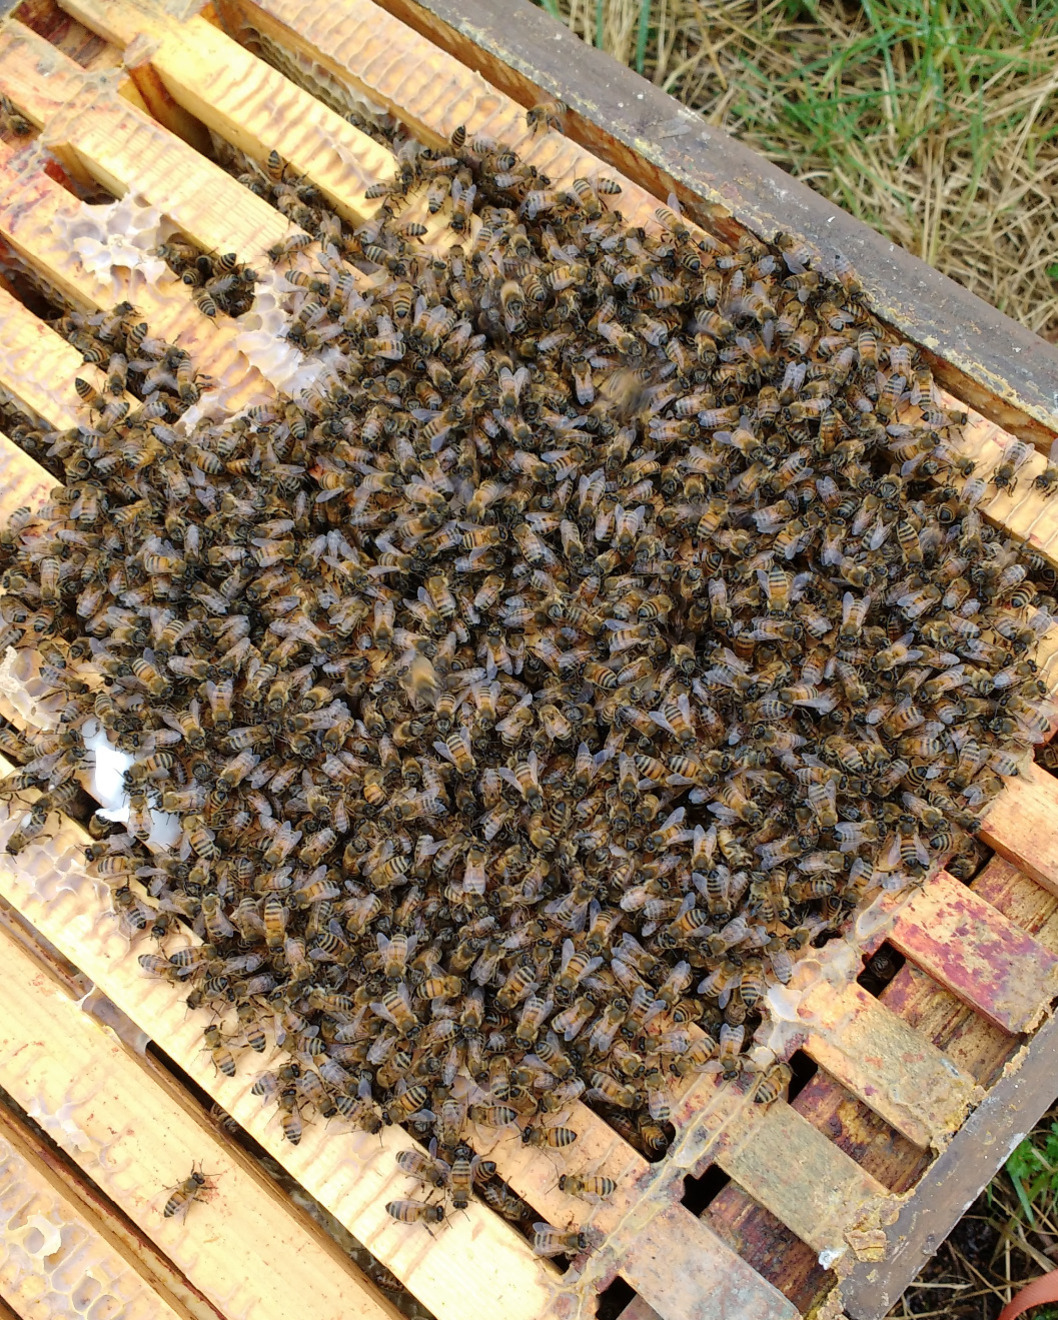 Honeybees in a loose cluster